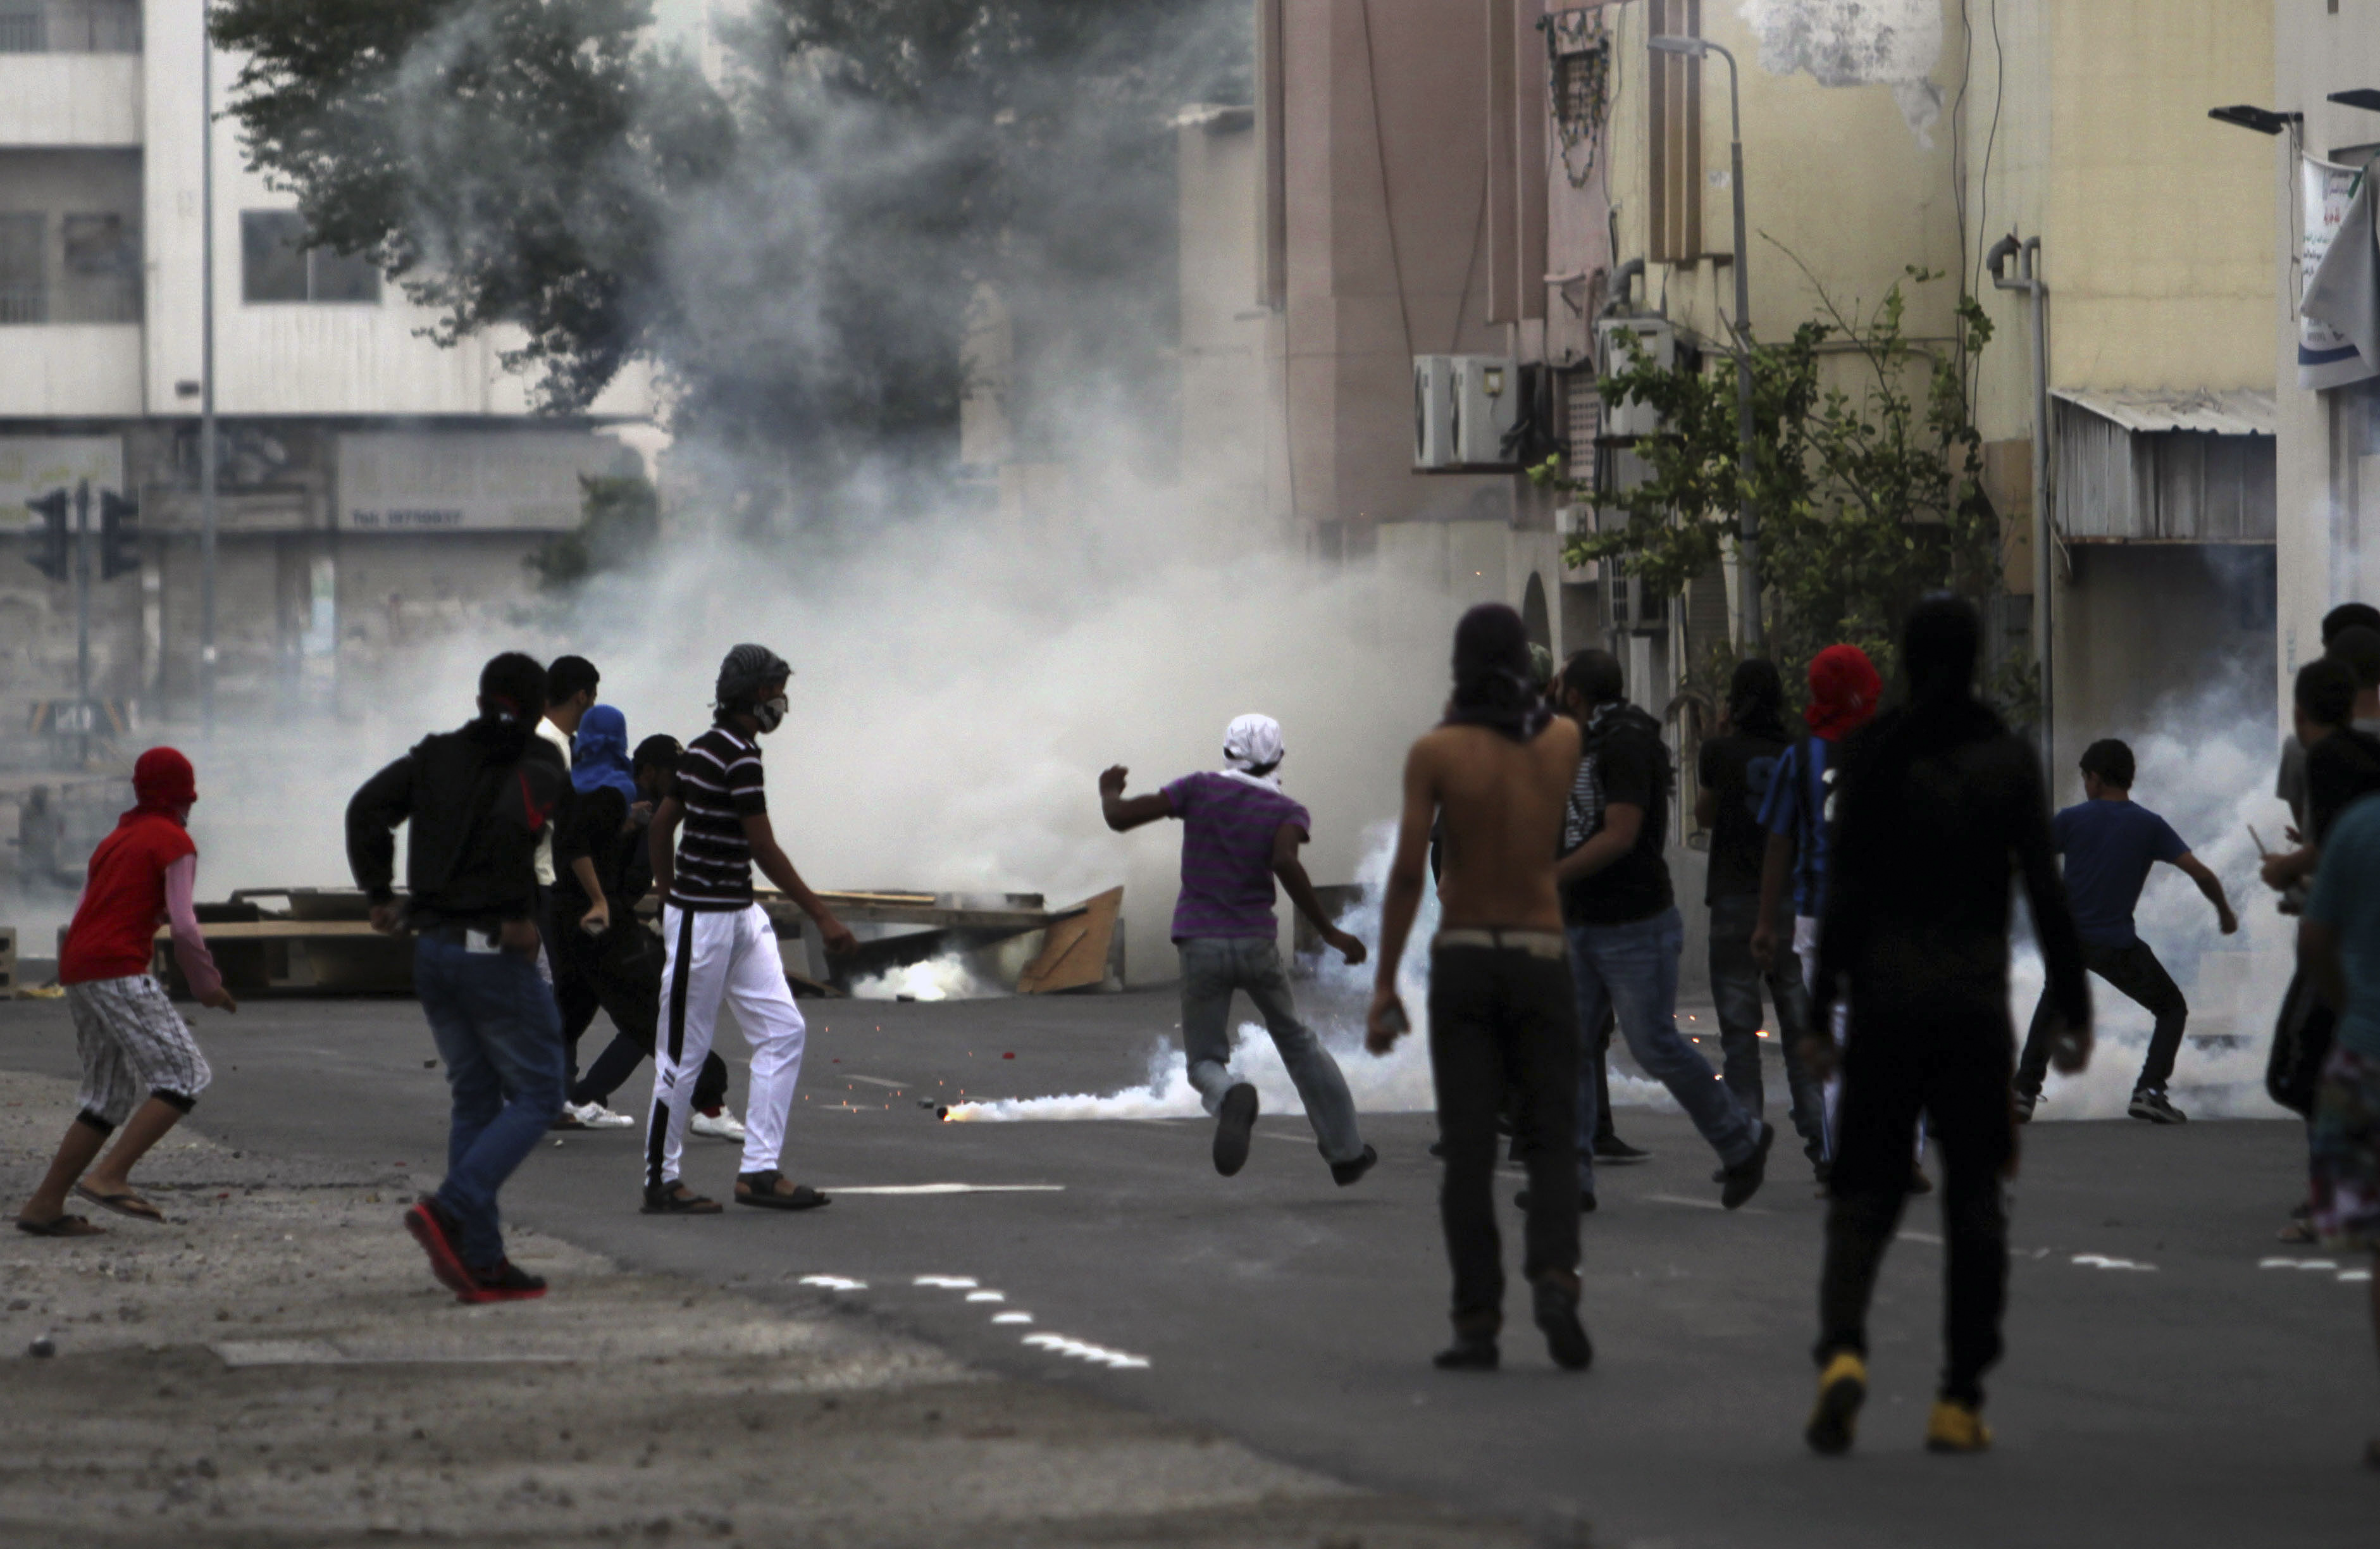 Brott och straff, Rapport, Tortyr, Utredning, våld, Demonstration, Bahrain